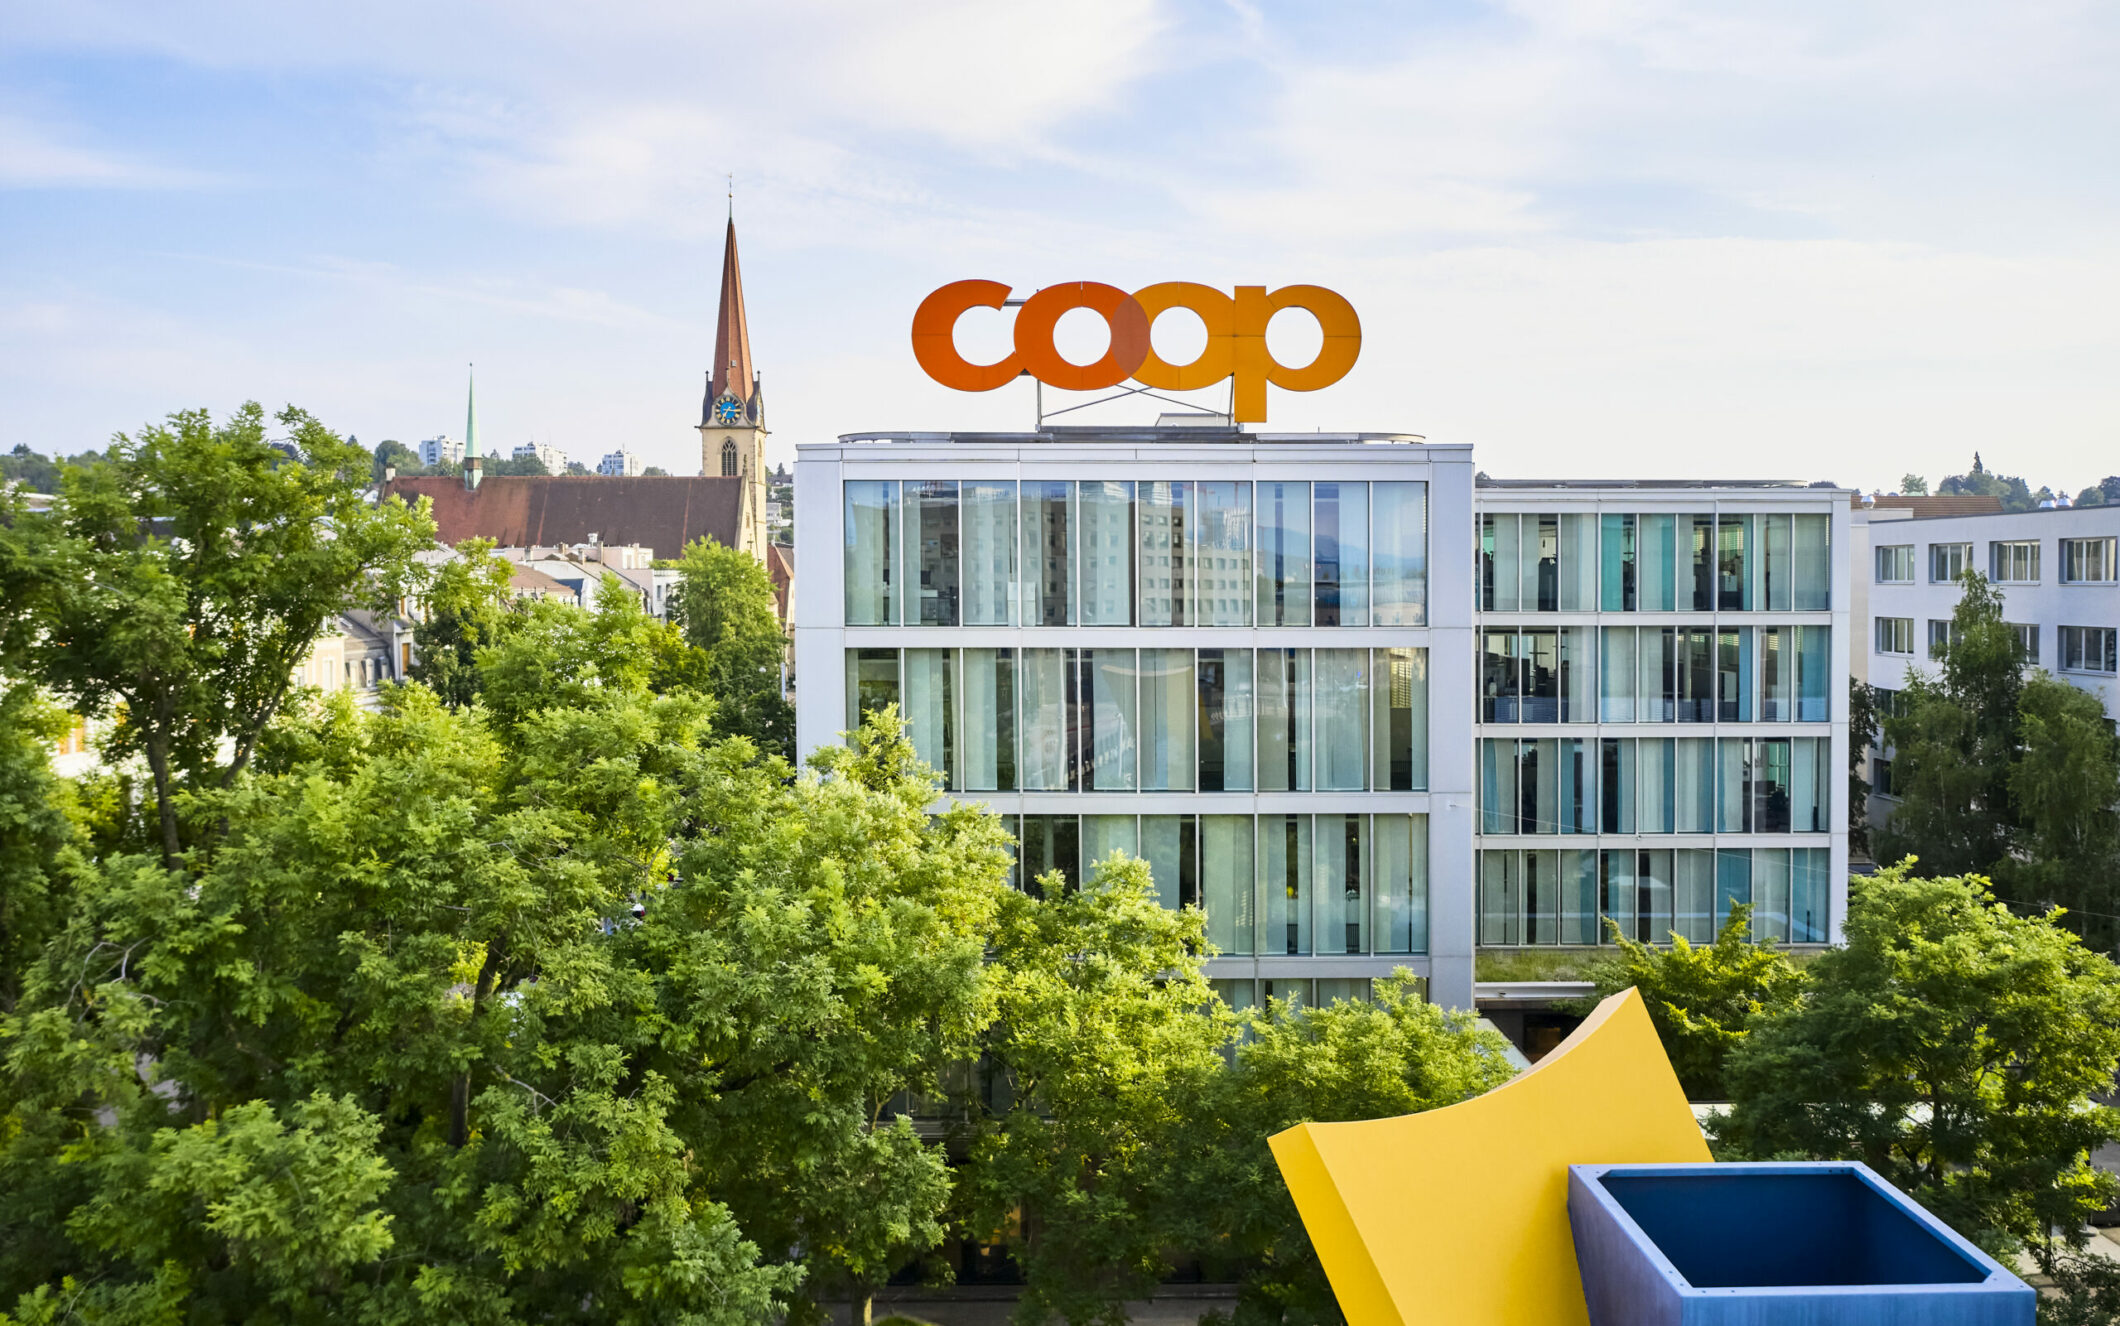 Bild vom Coop Hauptsitz und darauf ein großes Coop-Logo, Omnichannel Plattform